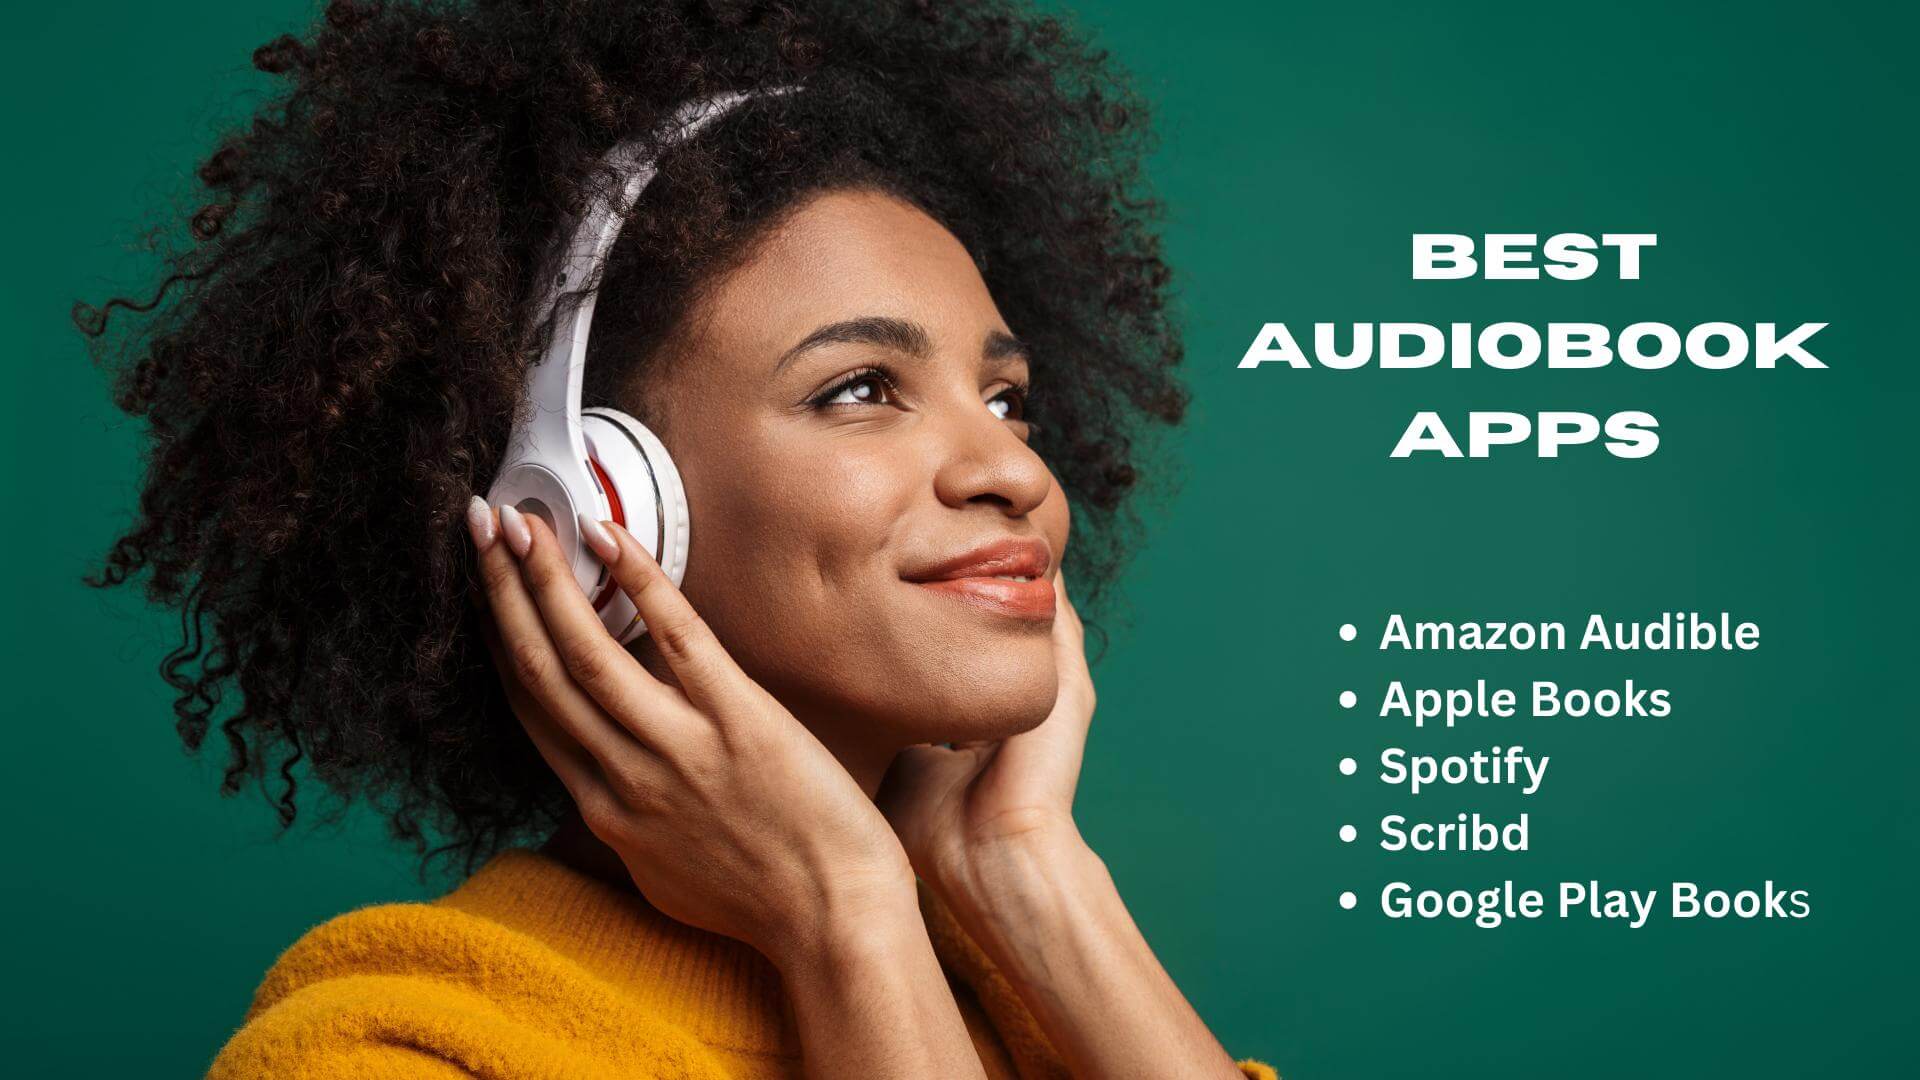 5 Best Audiobook Apps